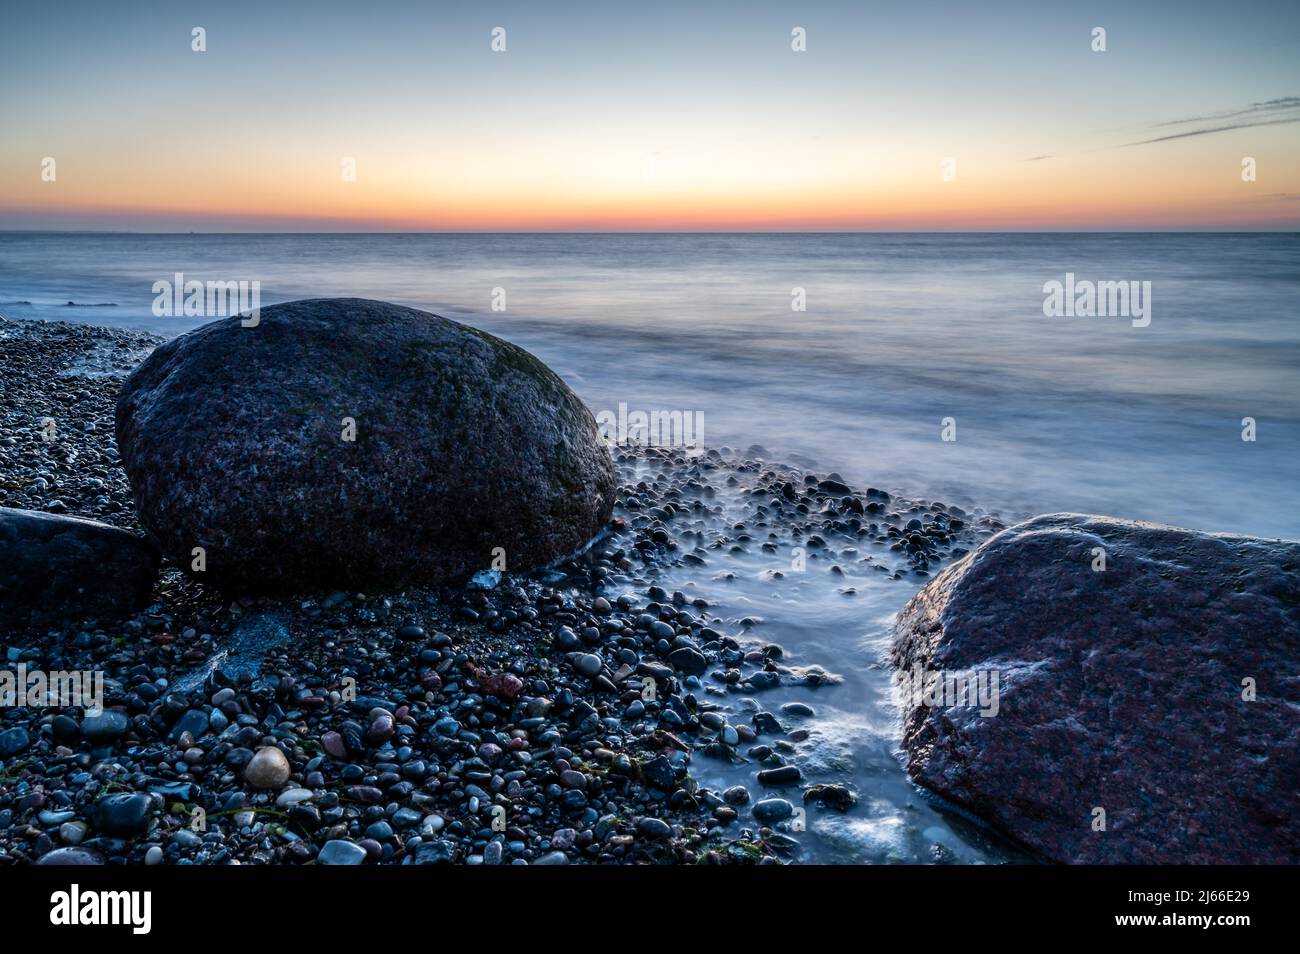 Langzeitbelichtung von grossen Felsbrocken am steinigen Strand der Ostsee bei Sonnenuntergang, Ostseebad Nienhagen, Mecklenburg-Vorpommern Foto Stock